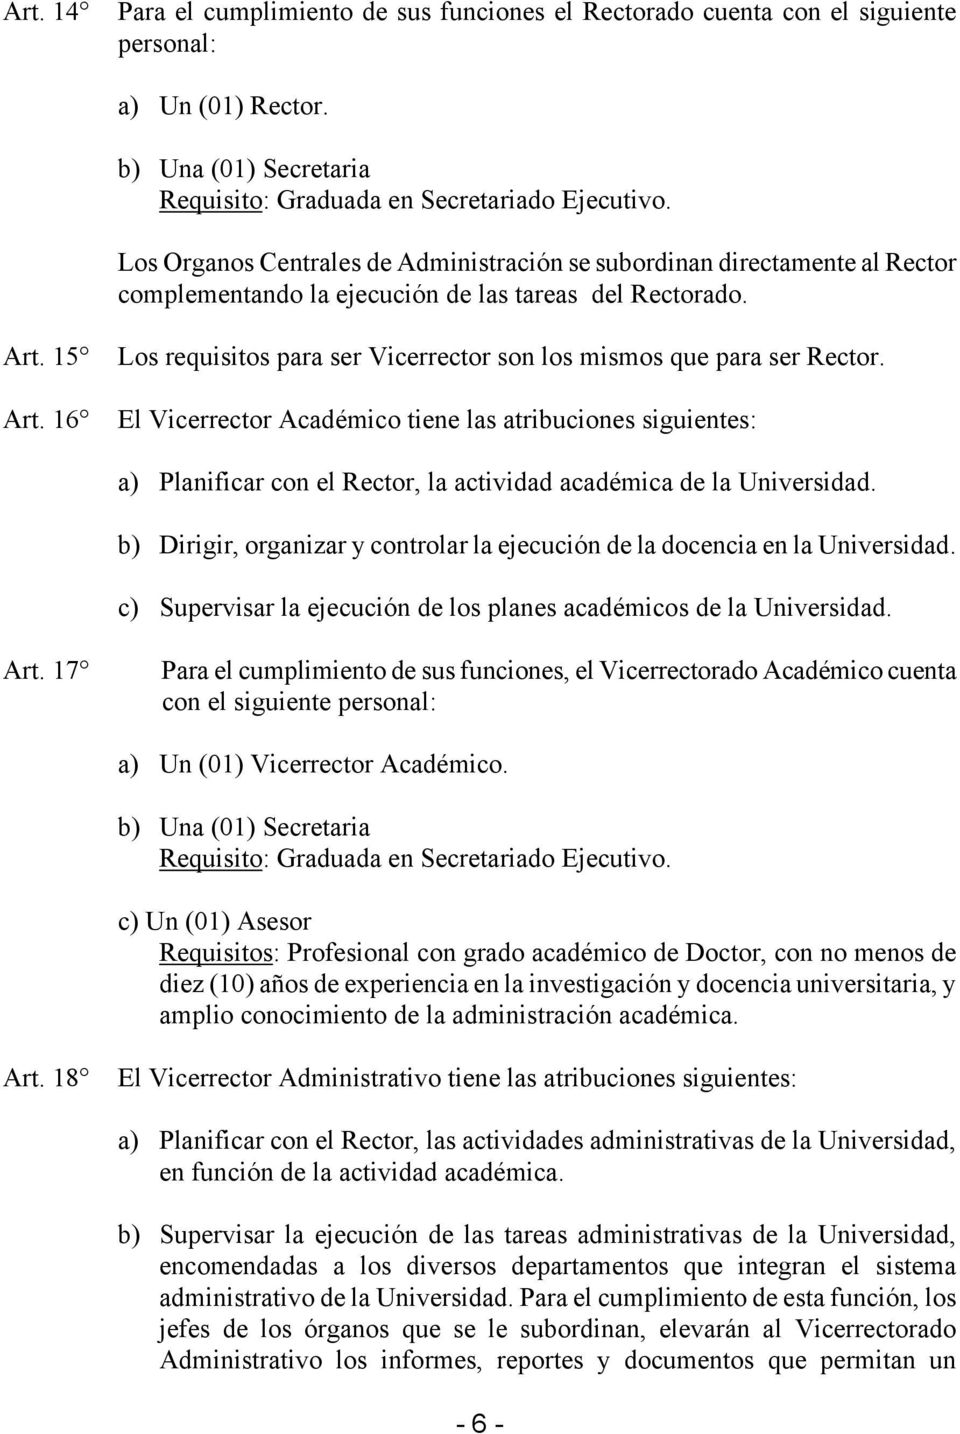 16 Los requisitos para ser Vicerrector son los mismos que para ser Rector.